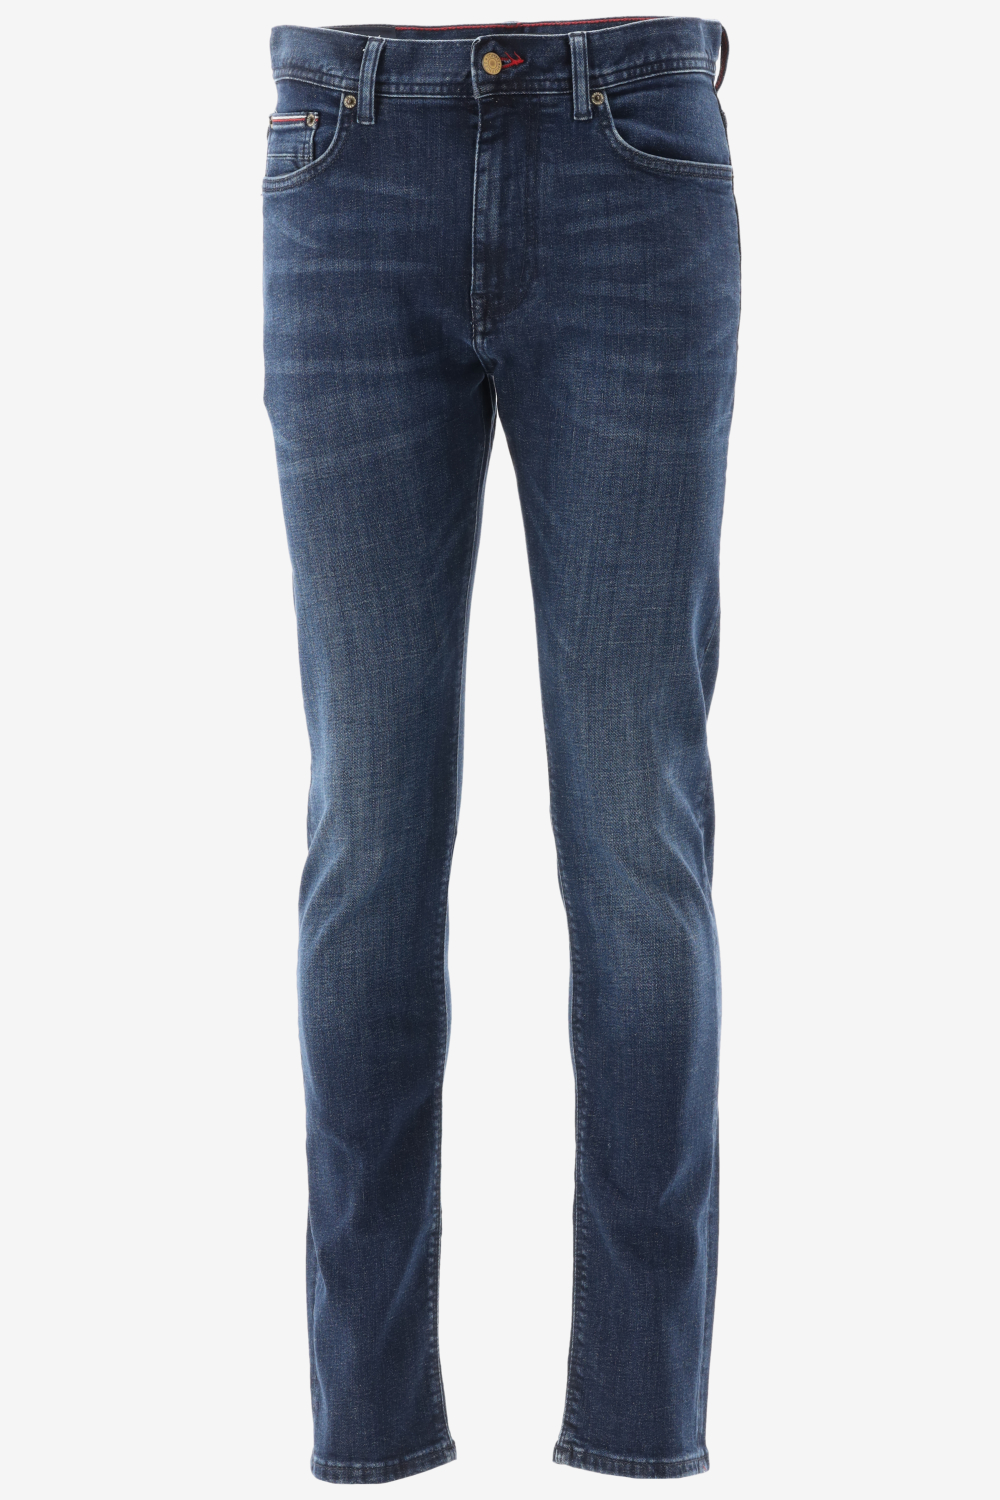 Tommy hilfiger slim fit bleecker slim jeans maat 29-L32